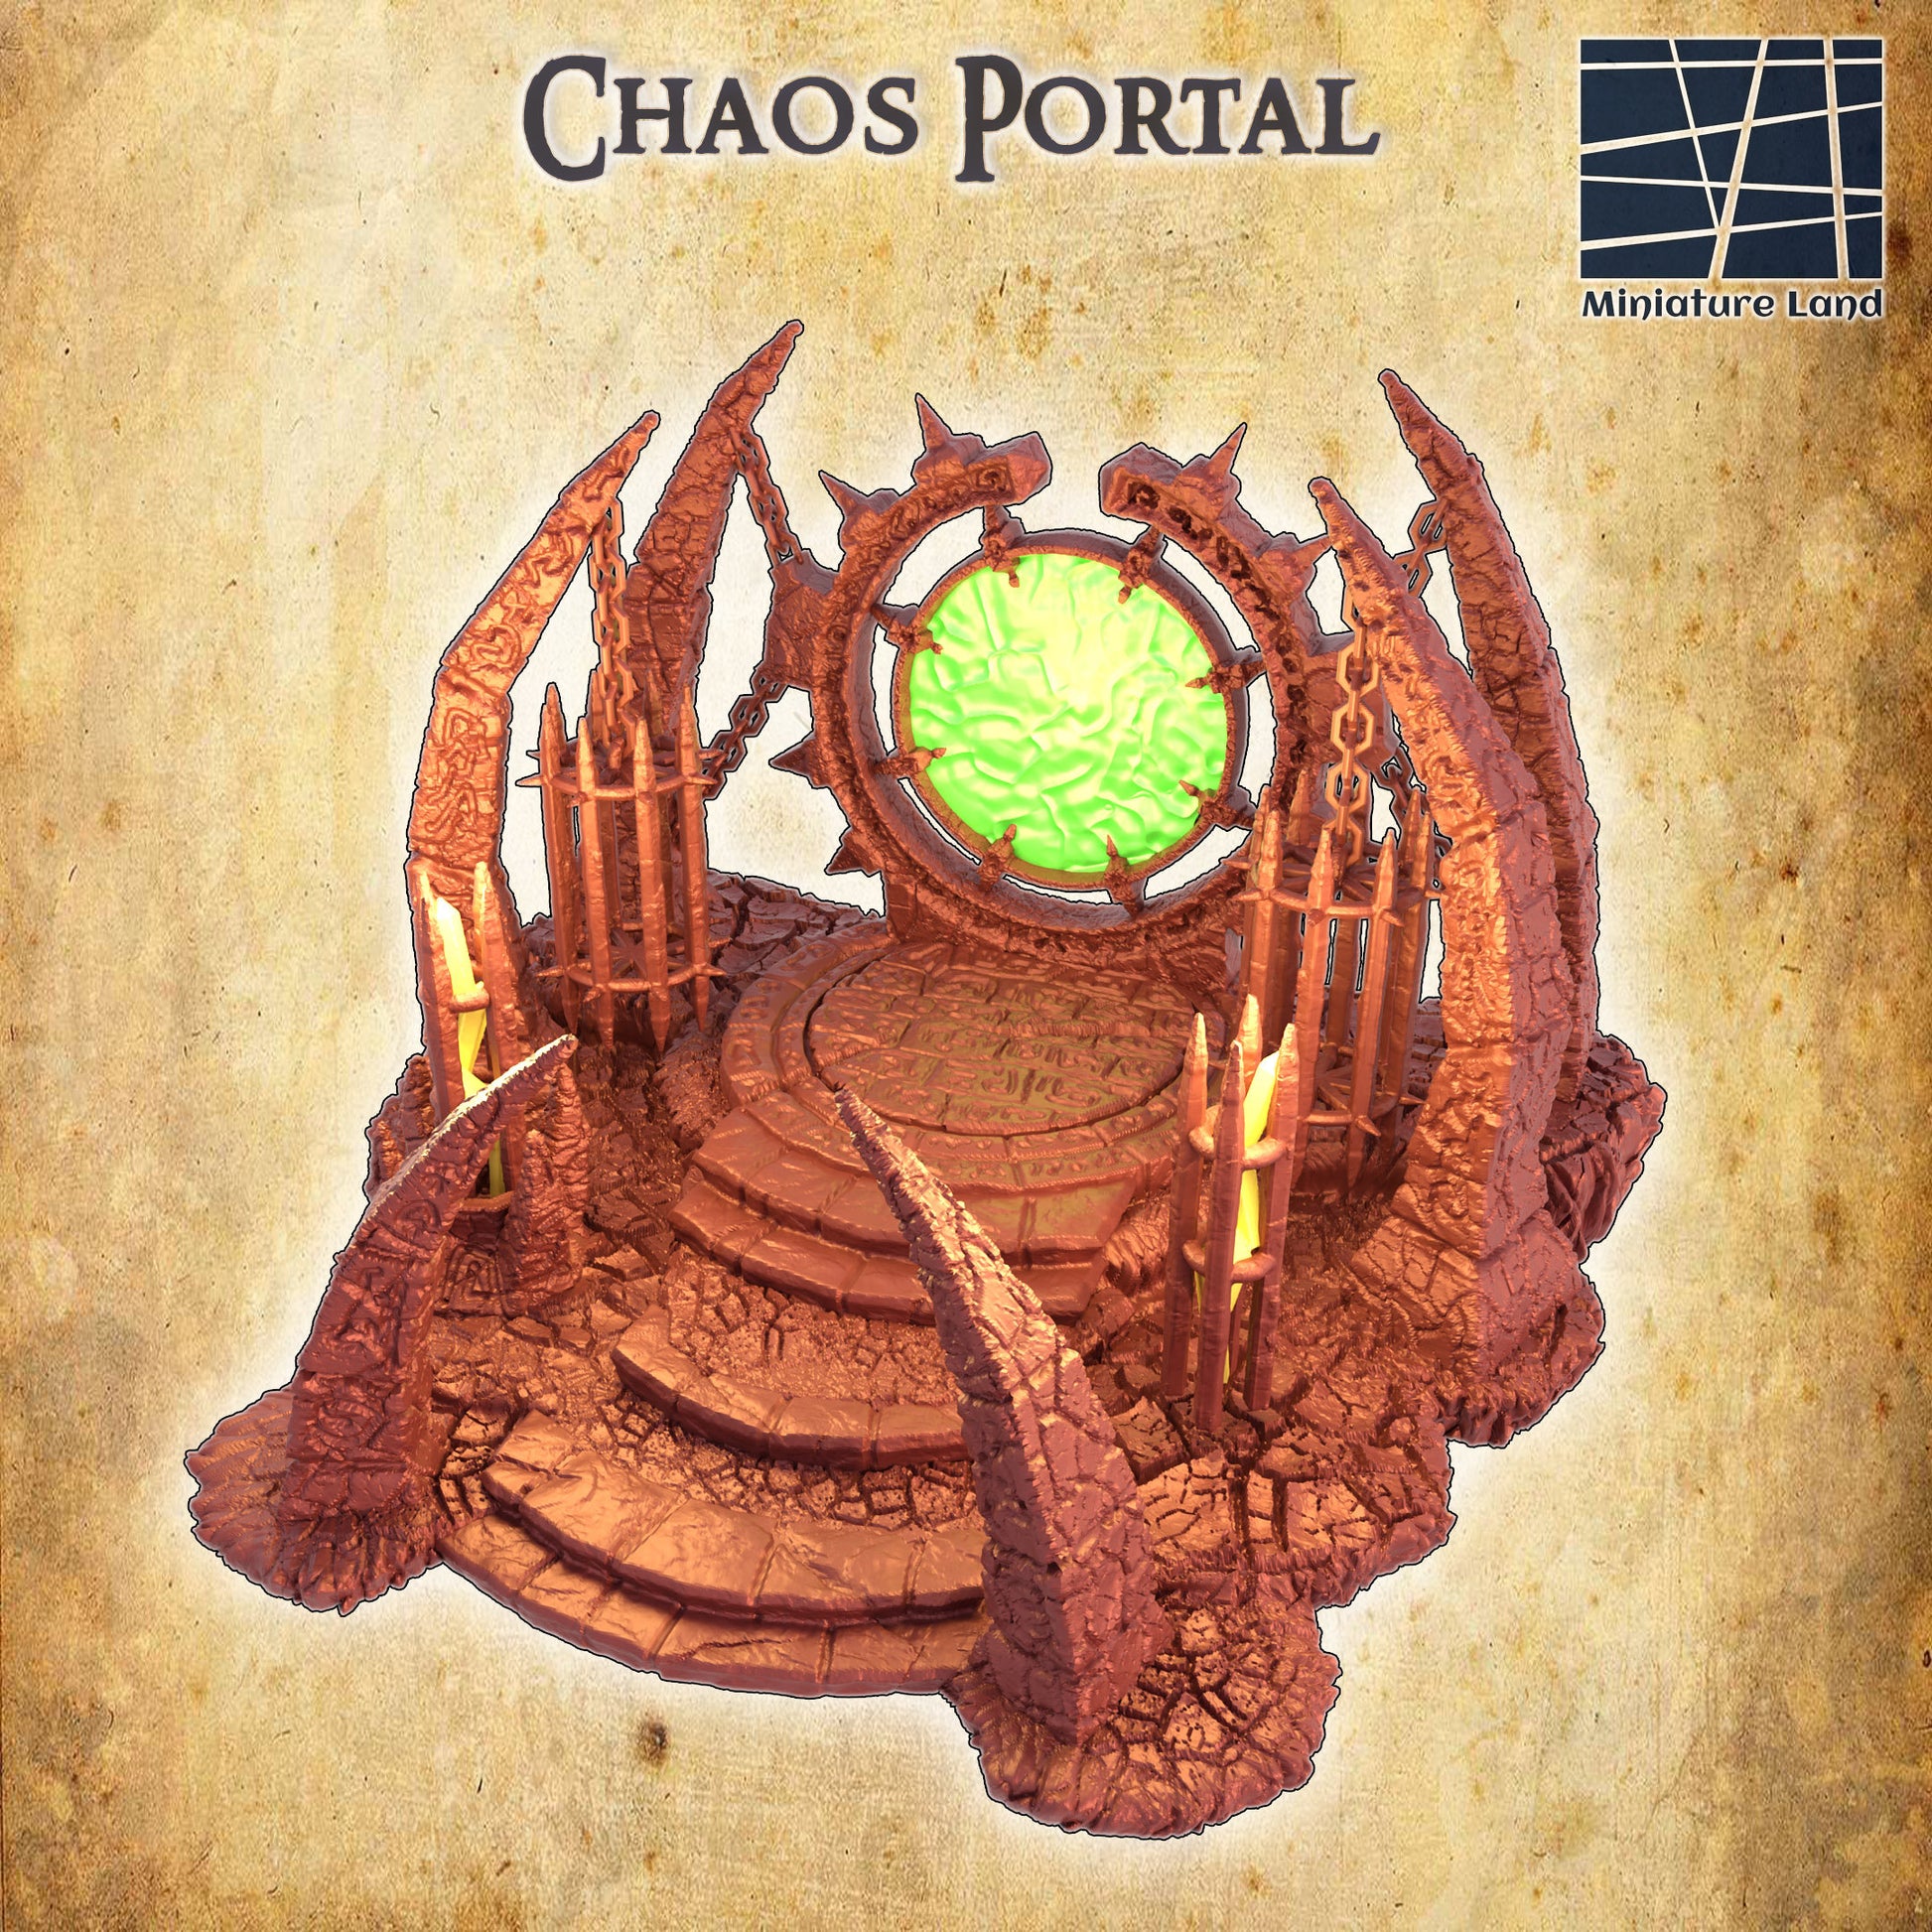 Chaos Portal, Portal